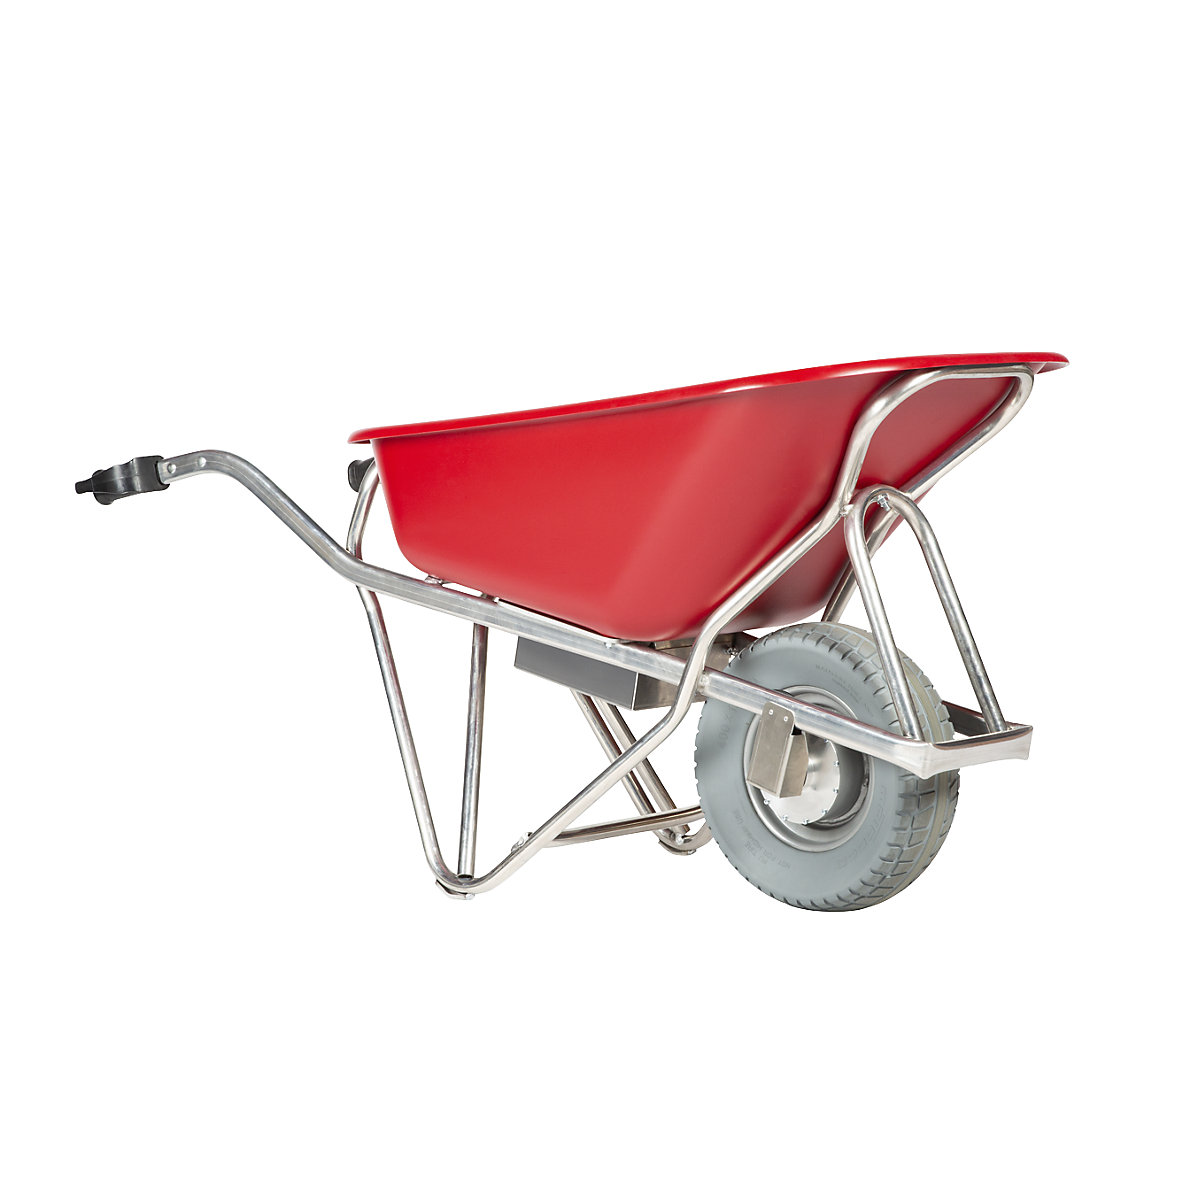 PROFI-MAX electric wheelbarrow – MATADOR